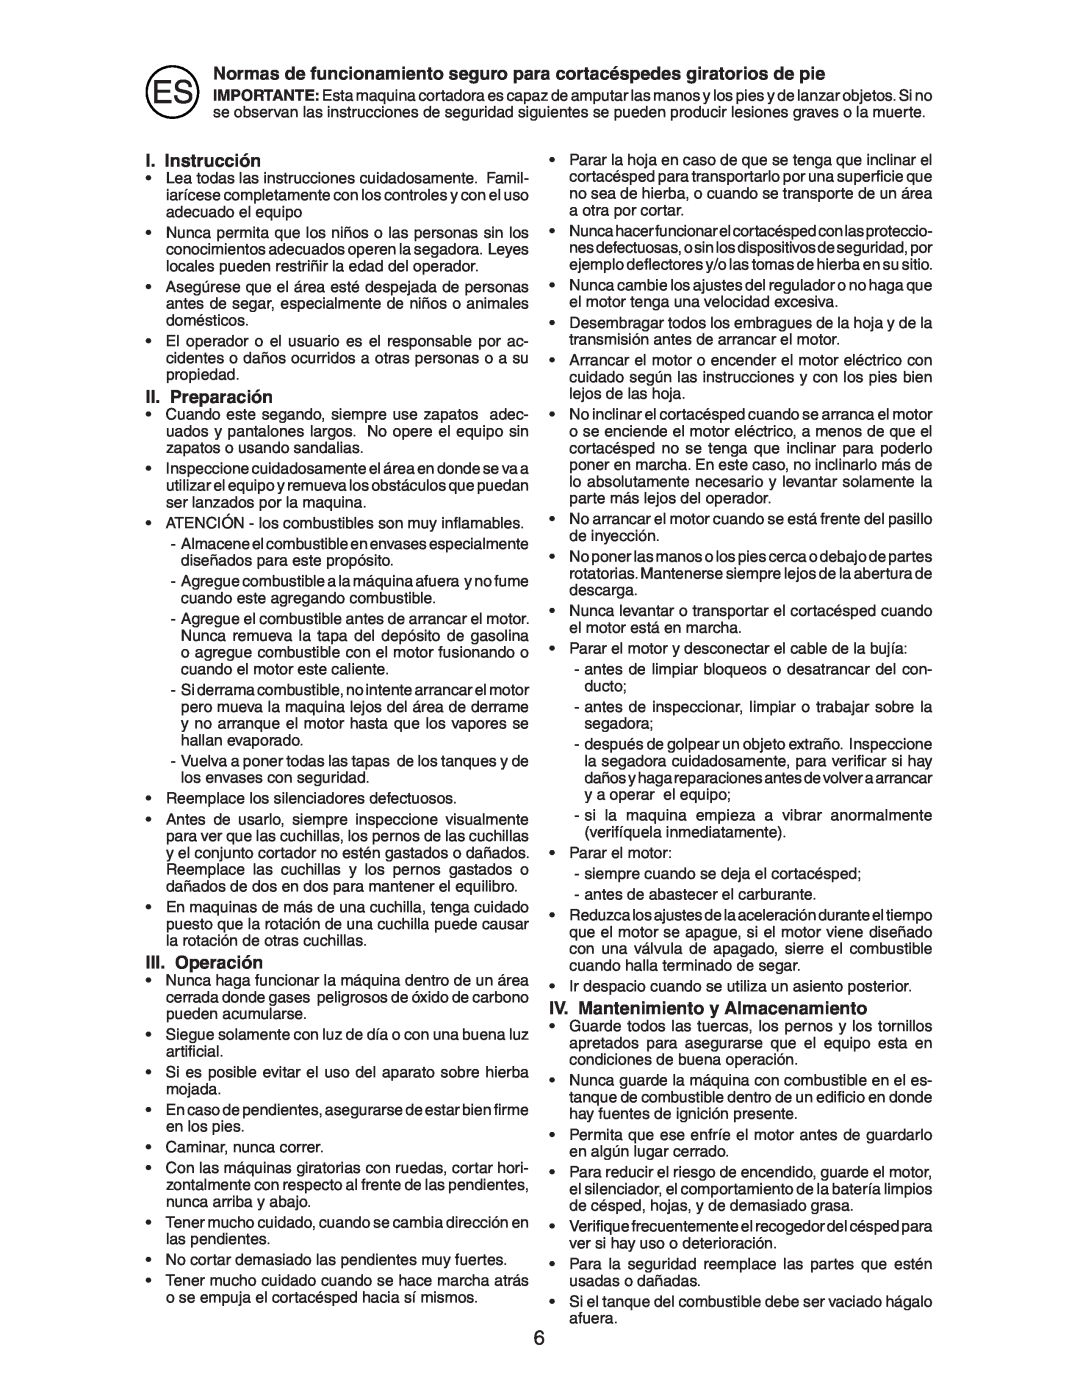 Jonsered LM2153CMD instruction manual I. Instrucción, II. Preparación, III. Operación, IV. Mantenimiento y Almacenamiento 